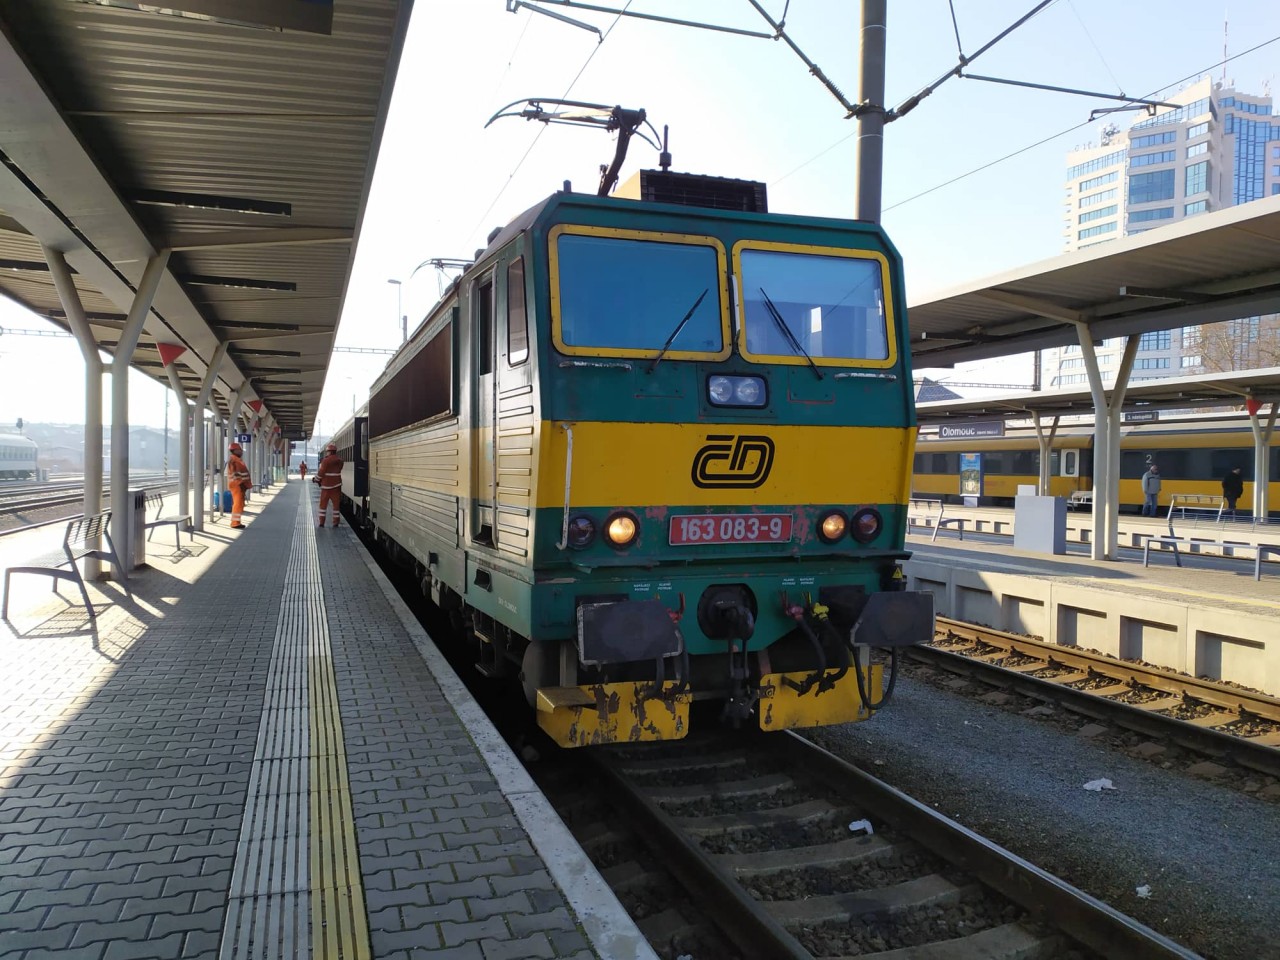 163 083-9 ukonila jzdu Os 3818 ve stanici Olomouc hlavn ndra, dne 9.2.2020